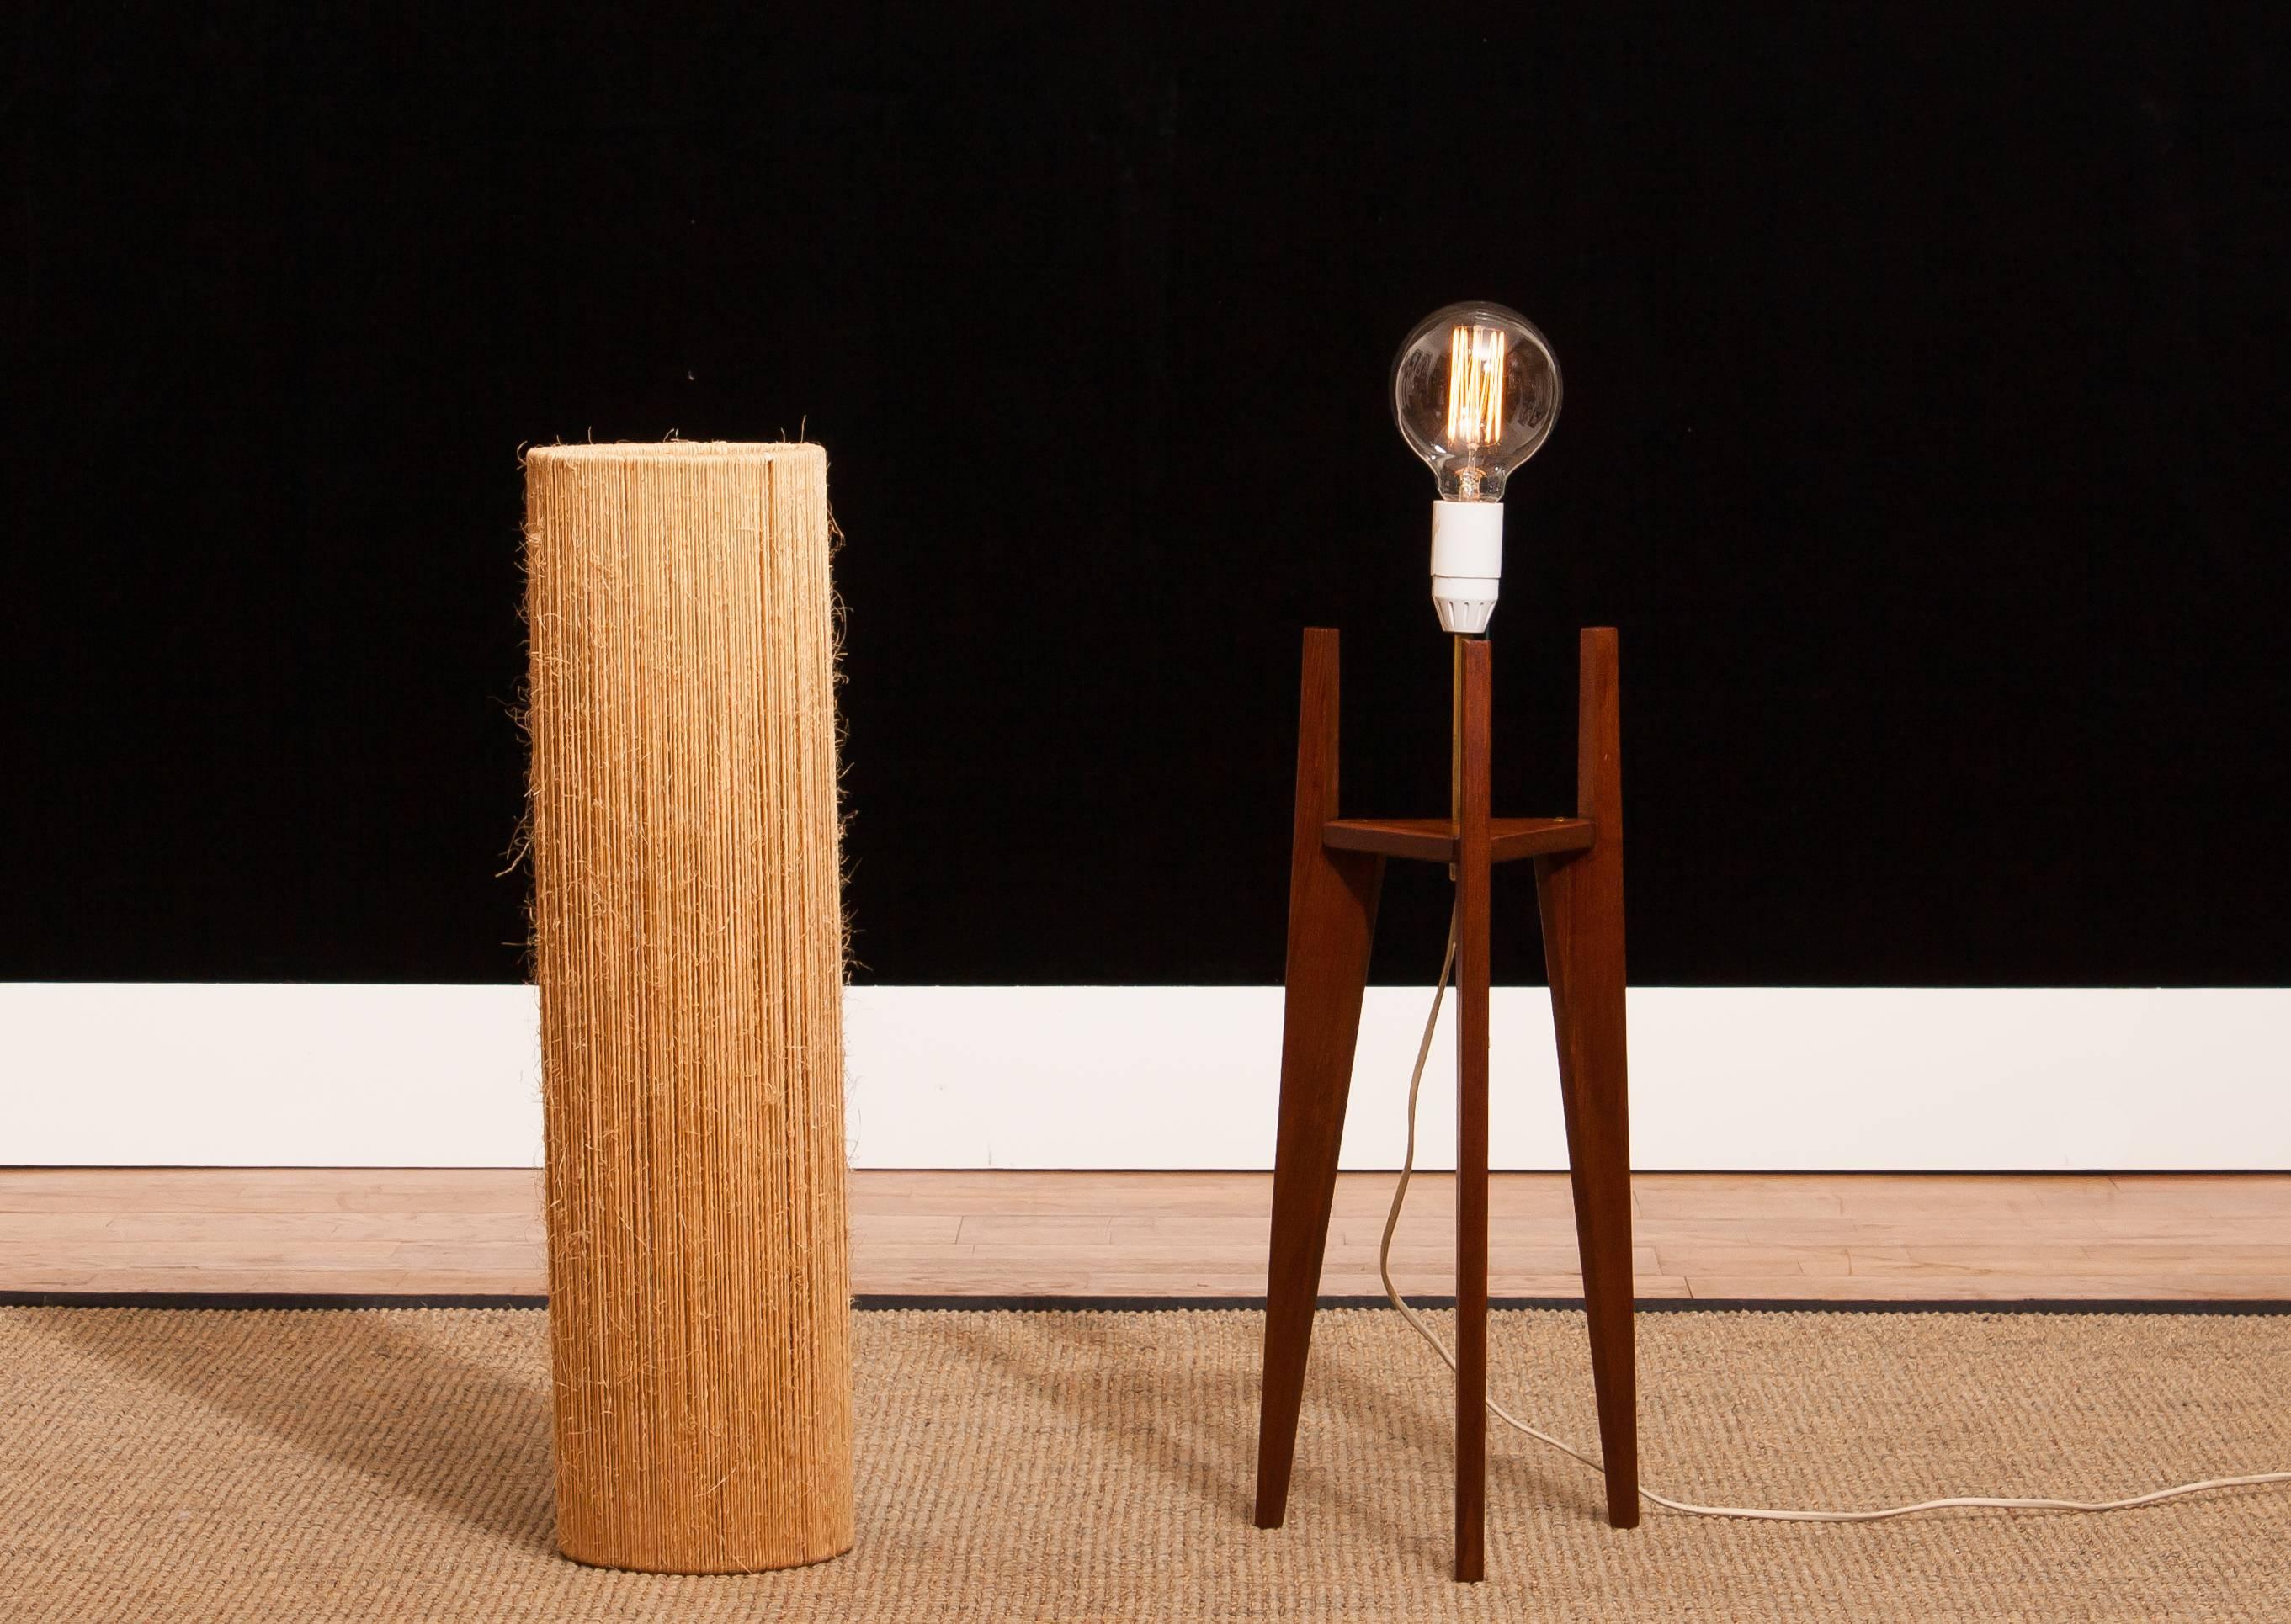 Mid-20th Century 1960s, Teak and Rope Floor Lamp by Fog & Mørup Denmark